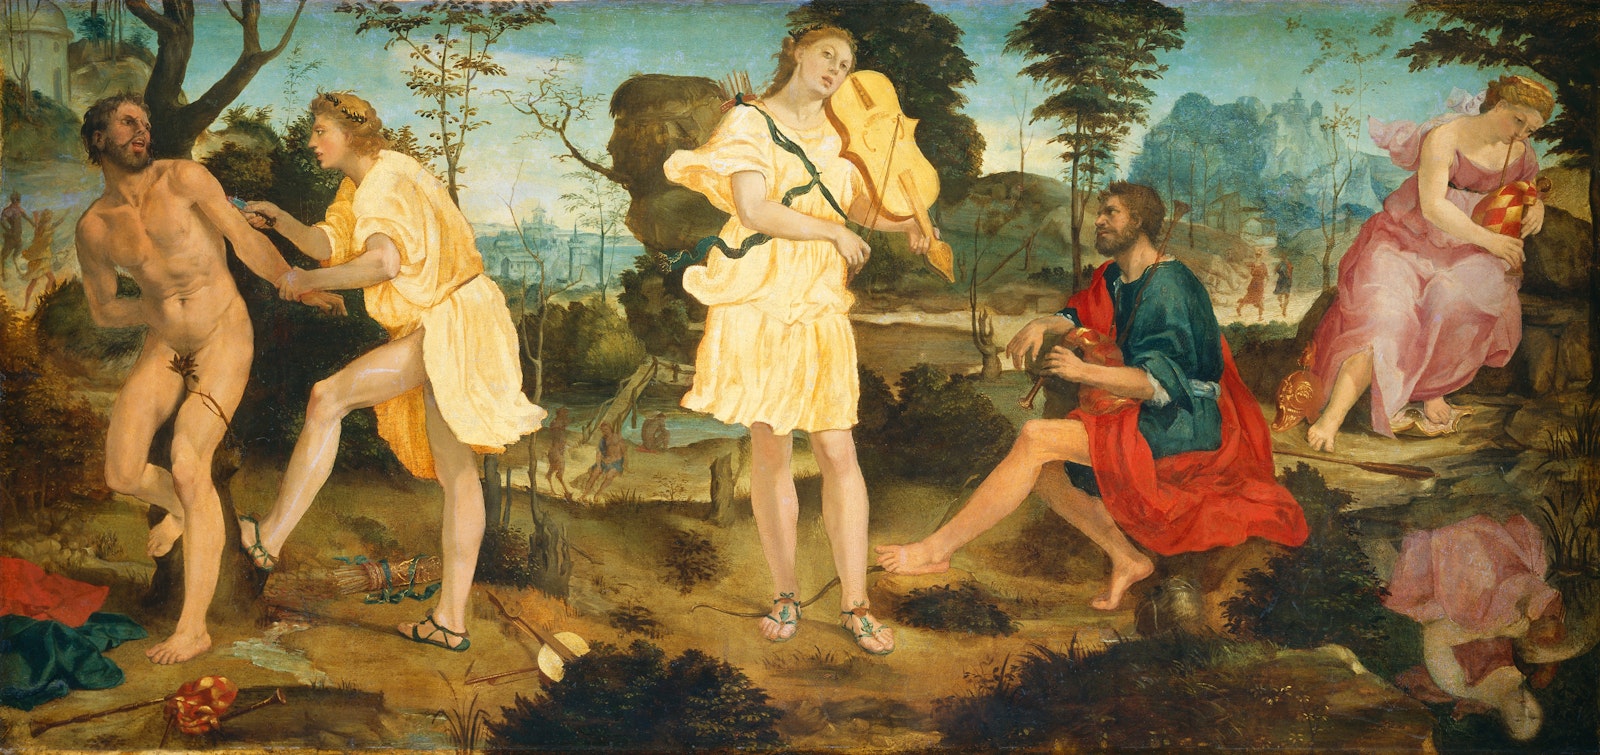 Apollo and Marsyas by Michelangelo Anselmi, circa 1540